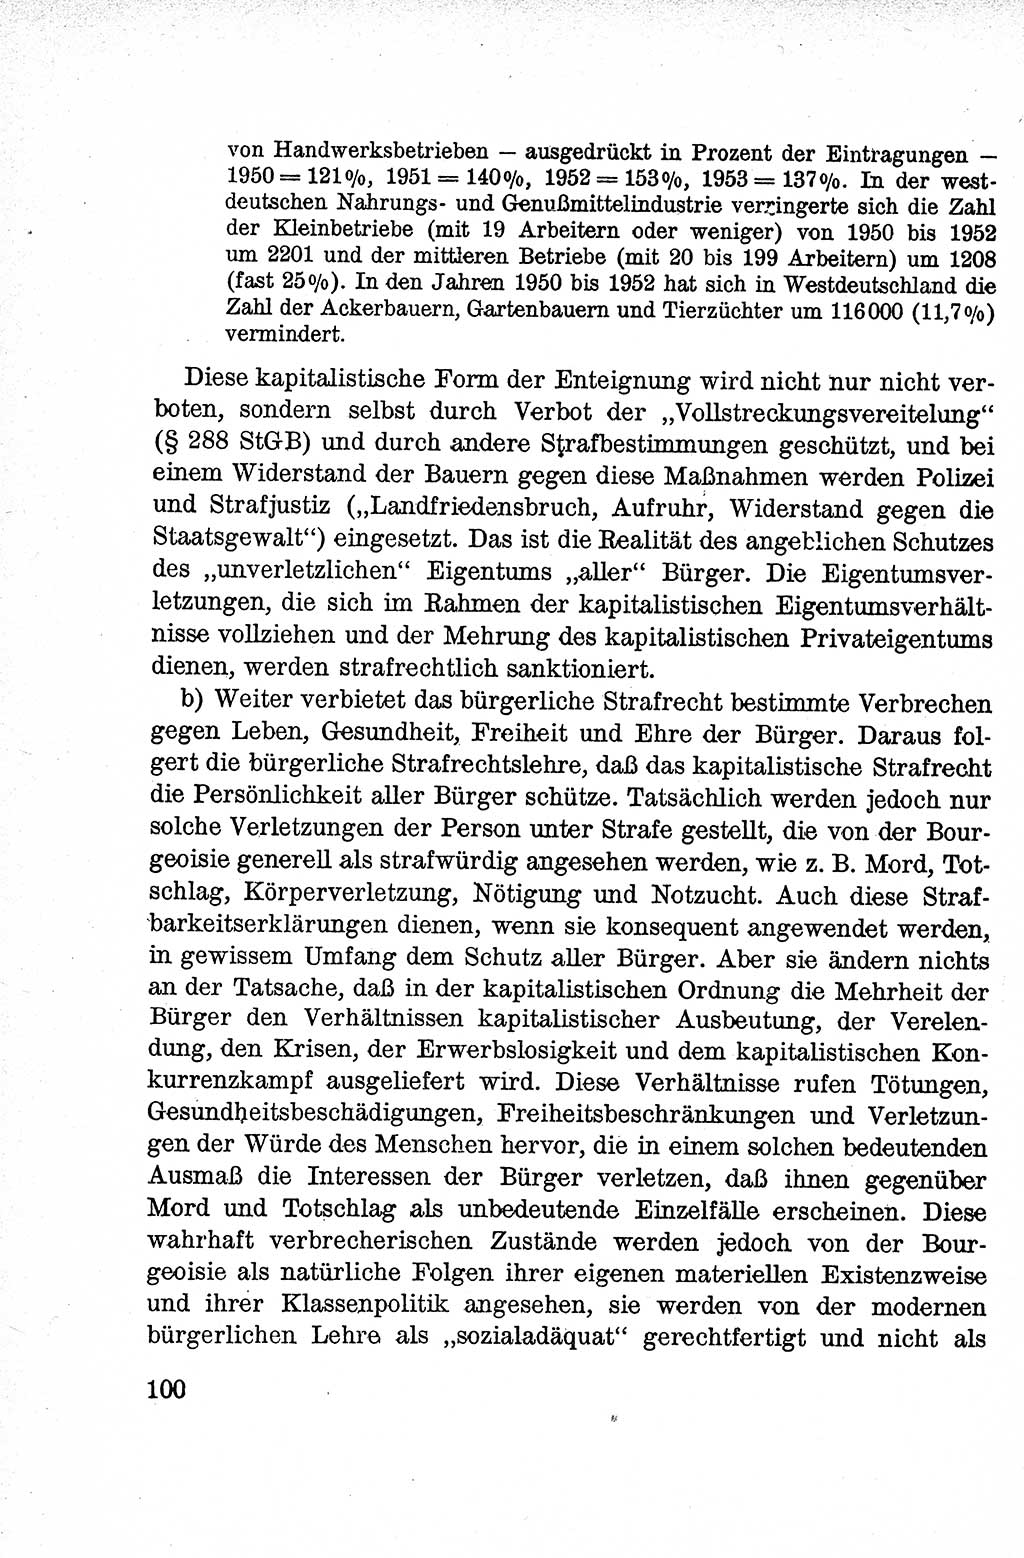 Lehrbuch des Strafrechts der Deutschen Demokratischen Republik (DDR), Allgemeiner Teil 1959, Seite 100 (Lb. Strafr. DDR AT 1959, S. 100)